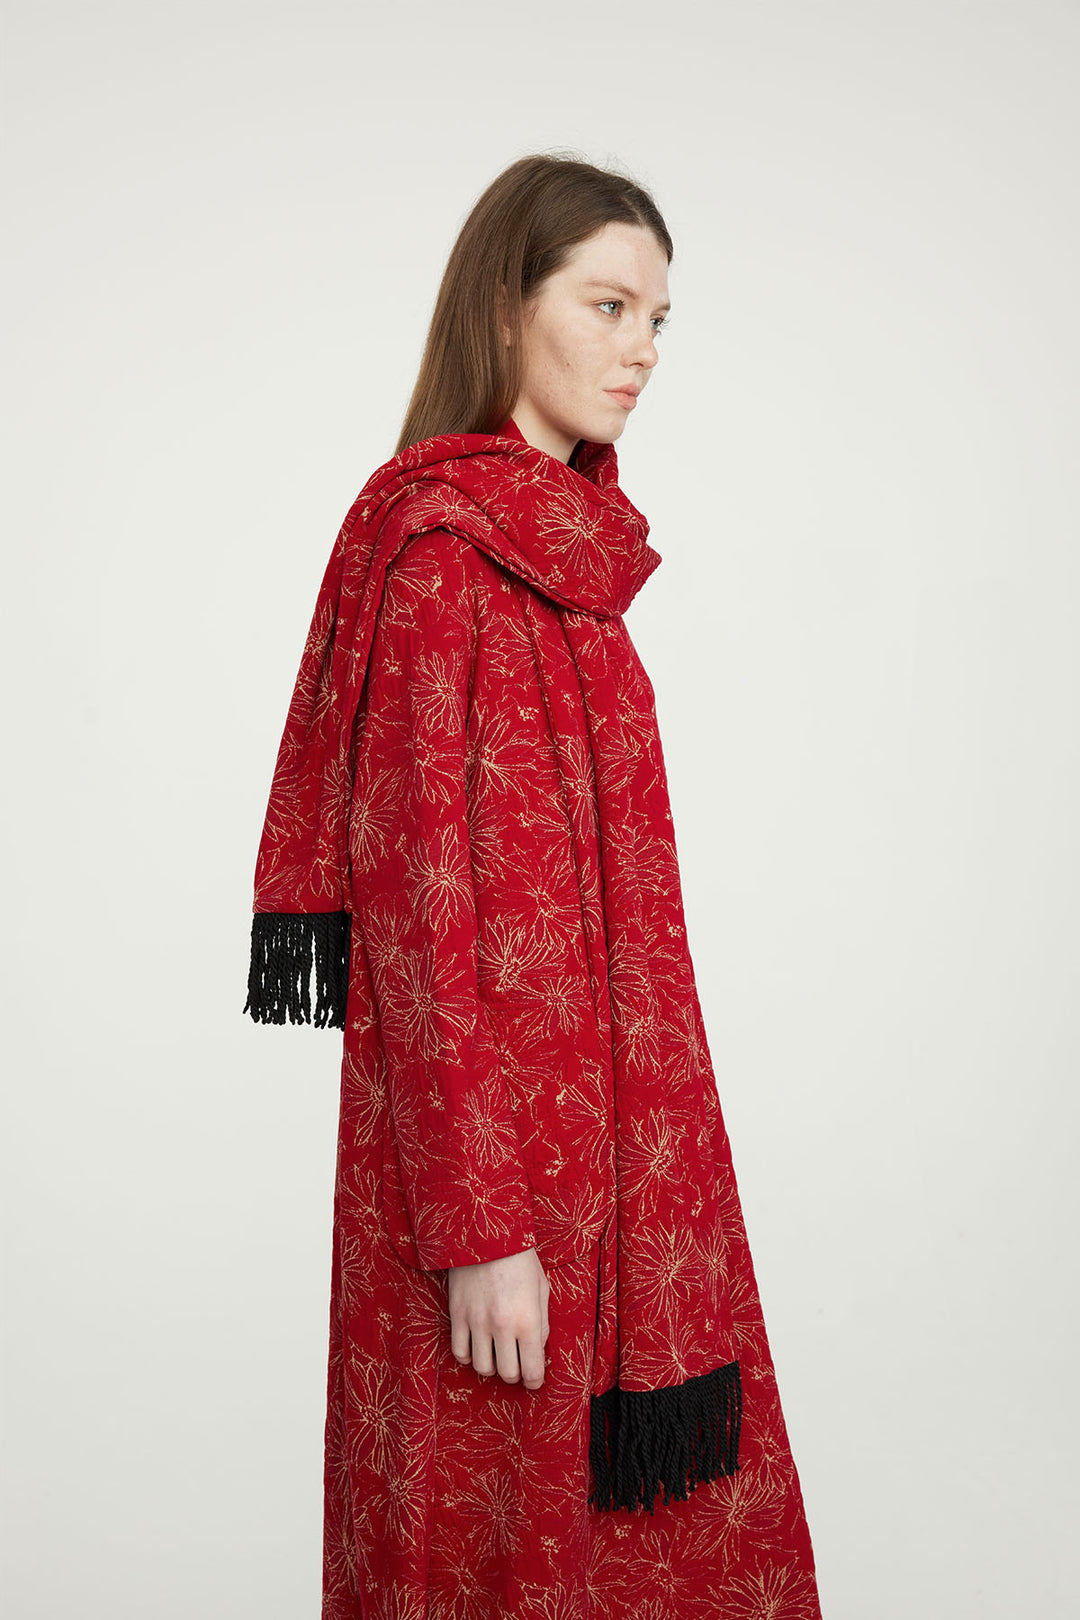 Robe décontractée brodée rouge avec écharpe